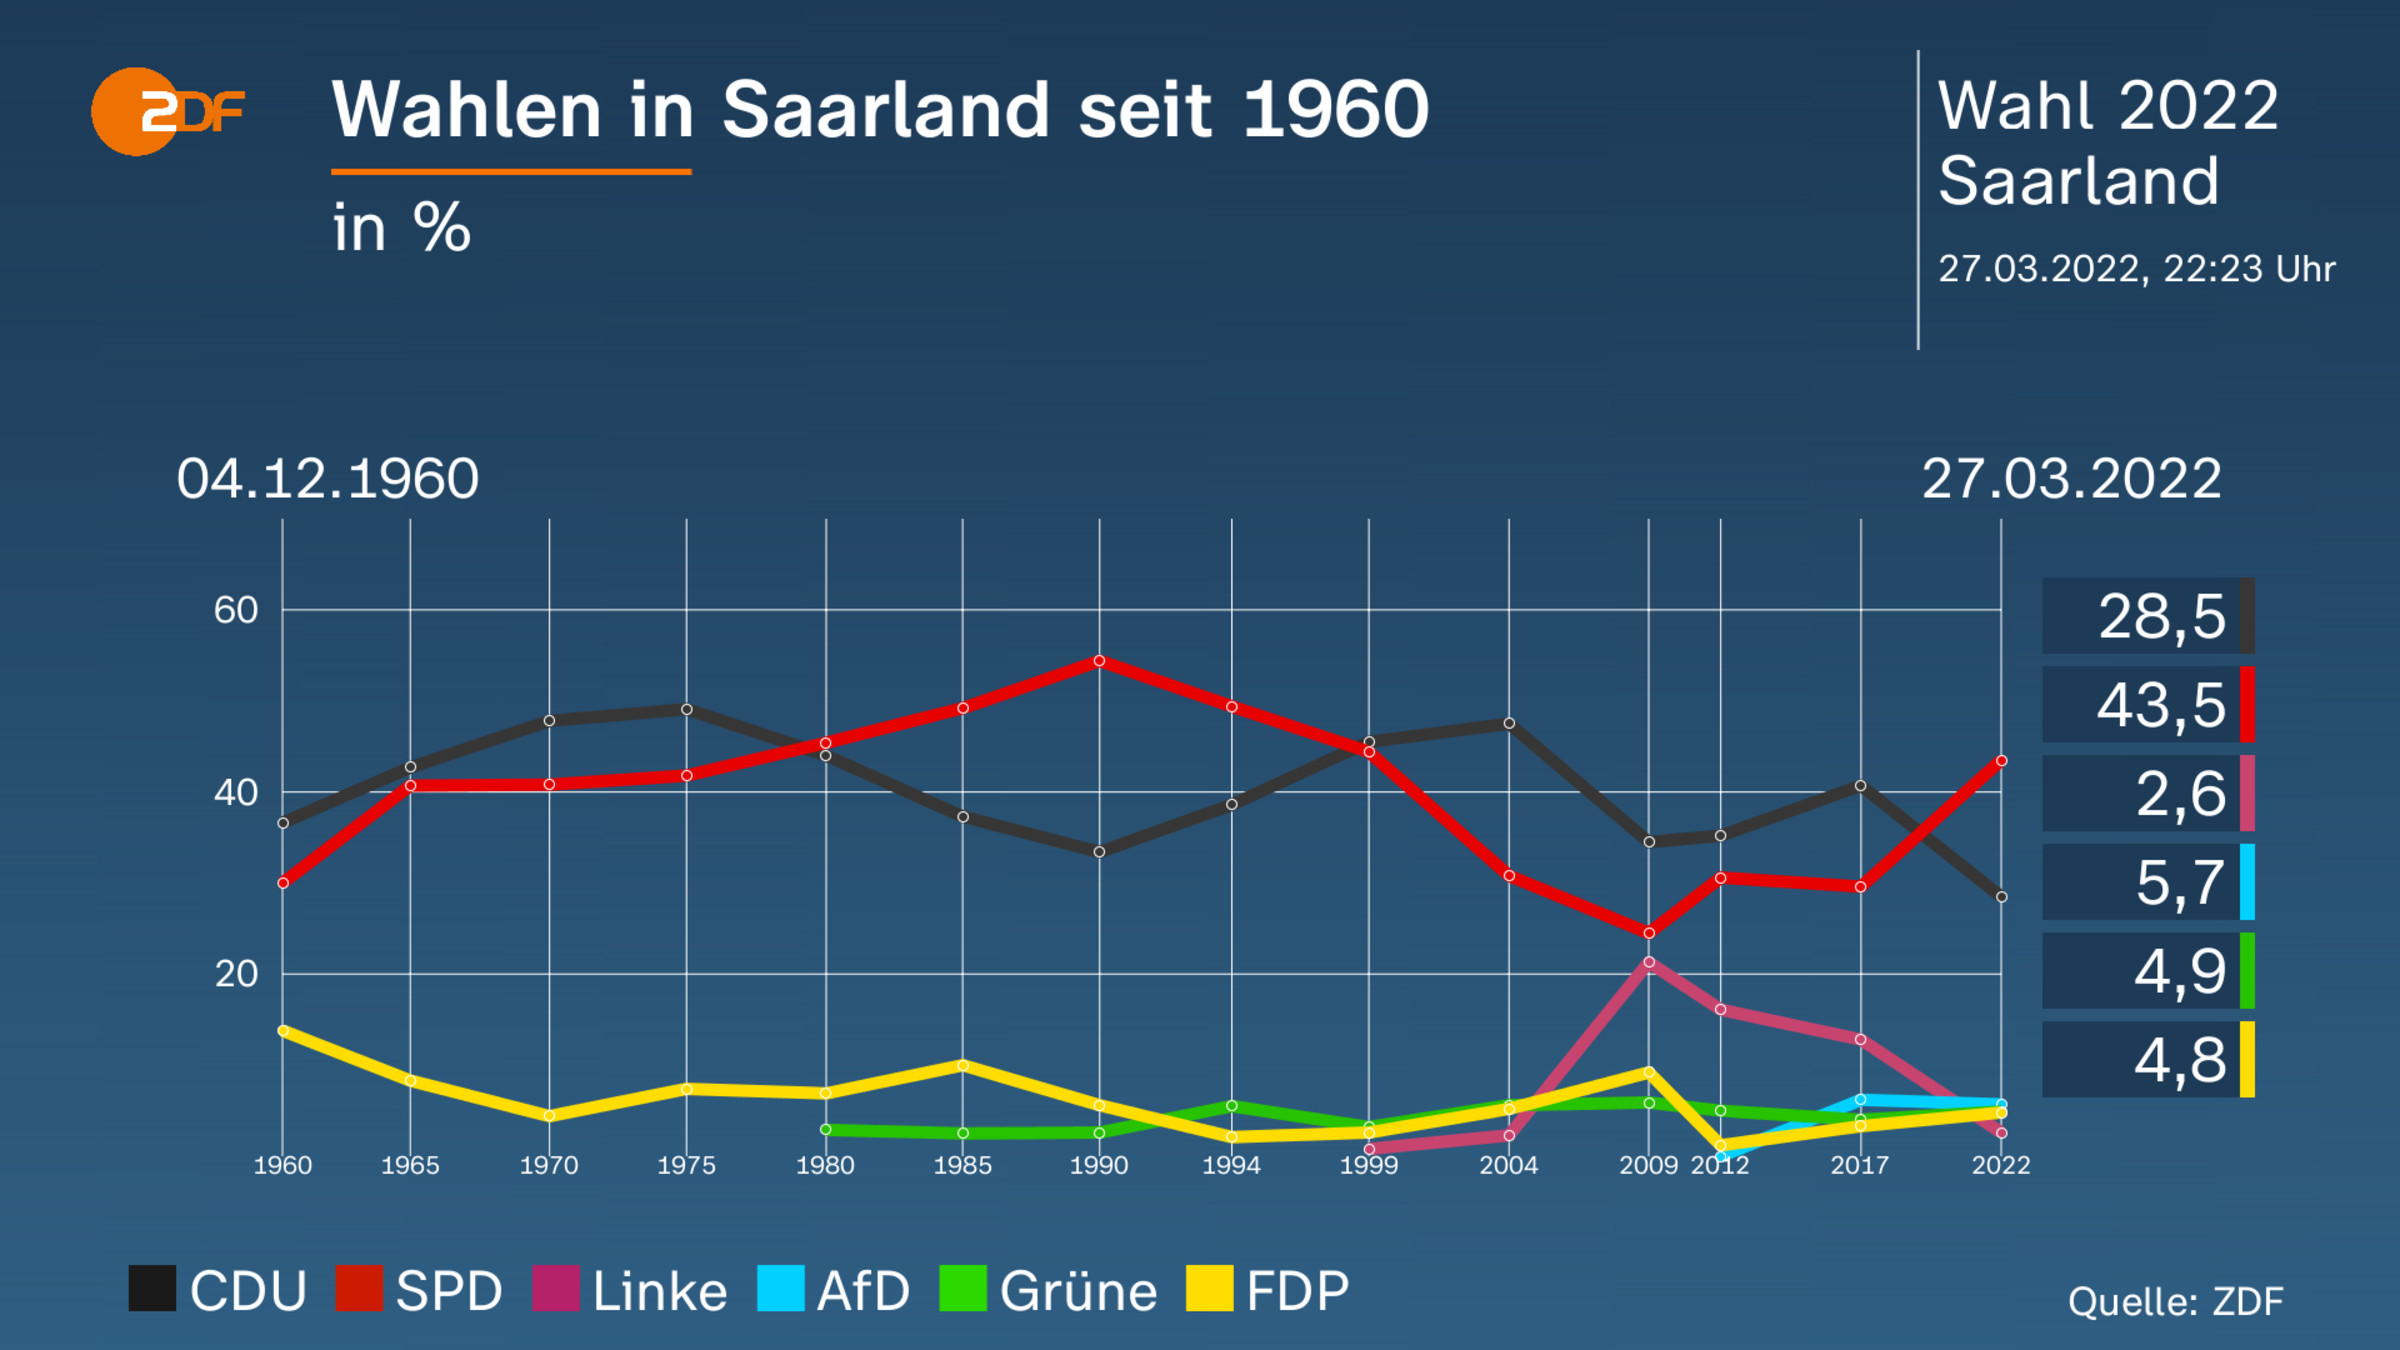 Wahlen in Saarland seit 1960